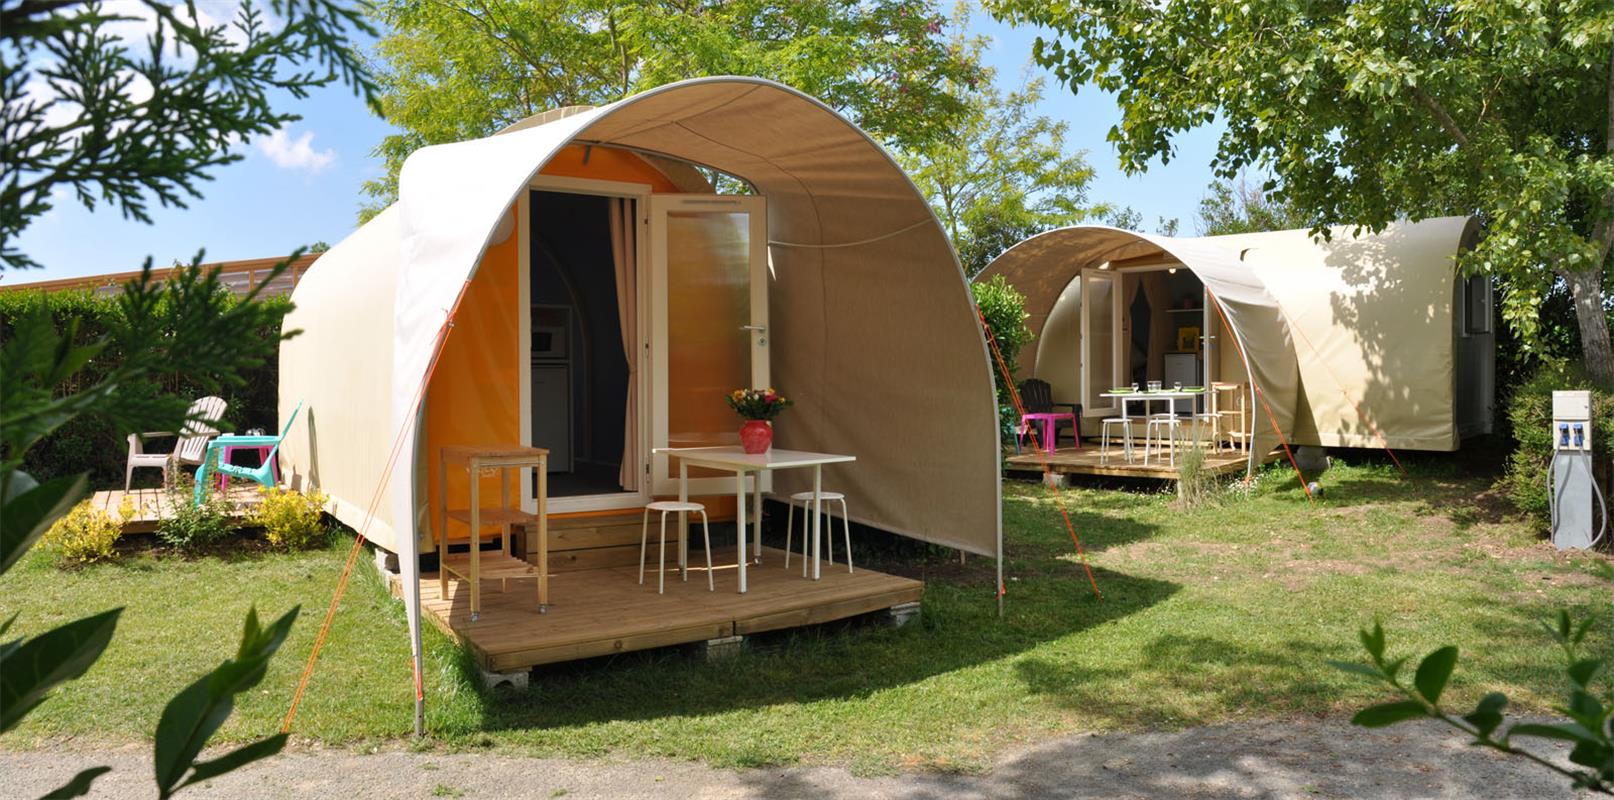 Huuraccommodatie - Insolite 1 - Camping Les Plages de l'Ain